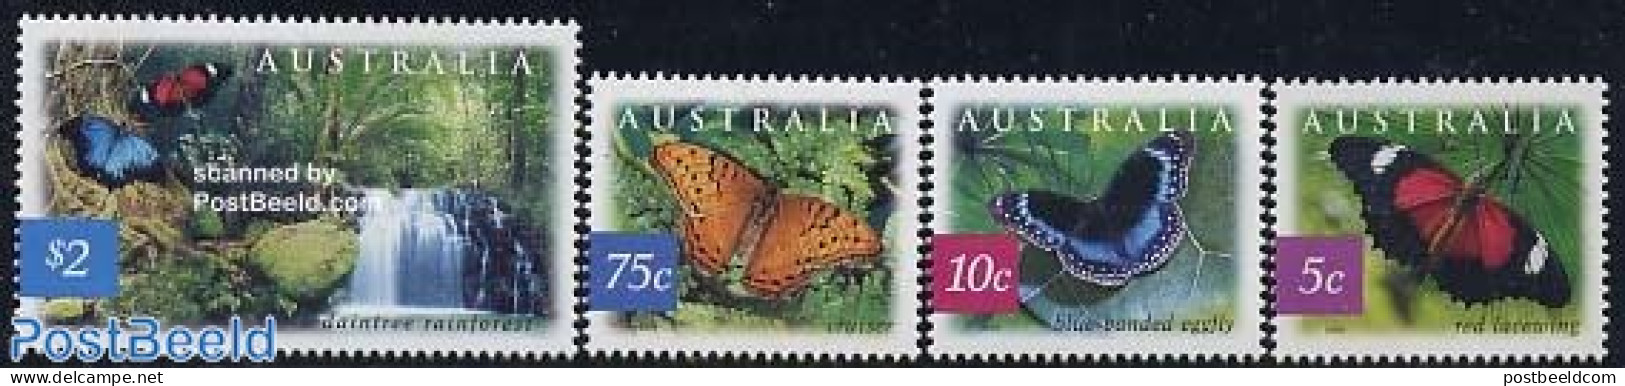 Australia 2004 Butterflies 4v, Mint NH, Nature - Butterflies - Water, Dams & Falls - Neufs